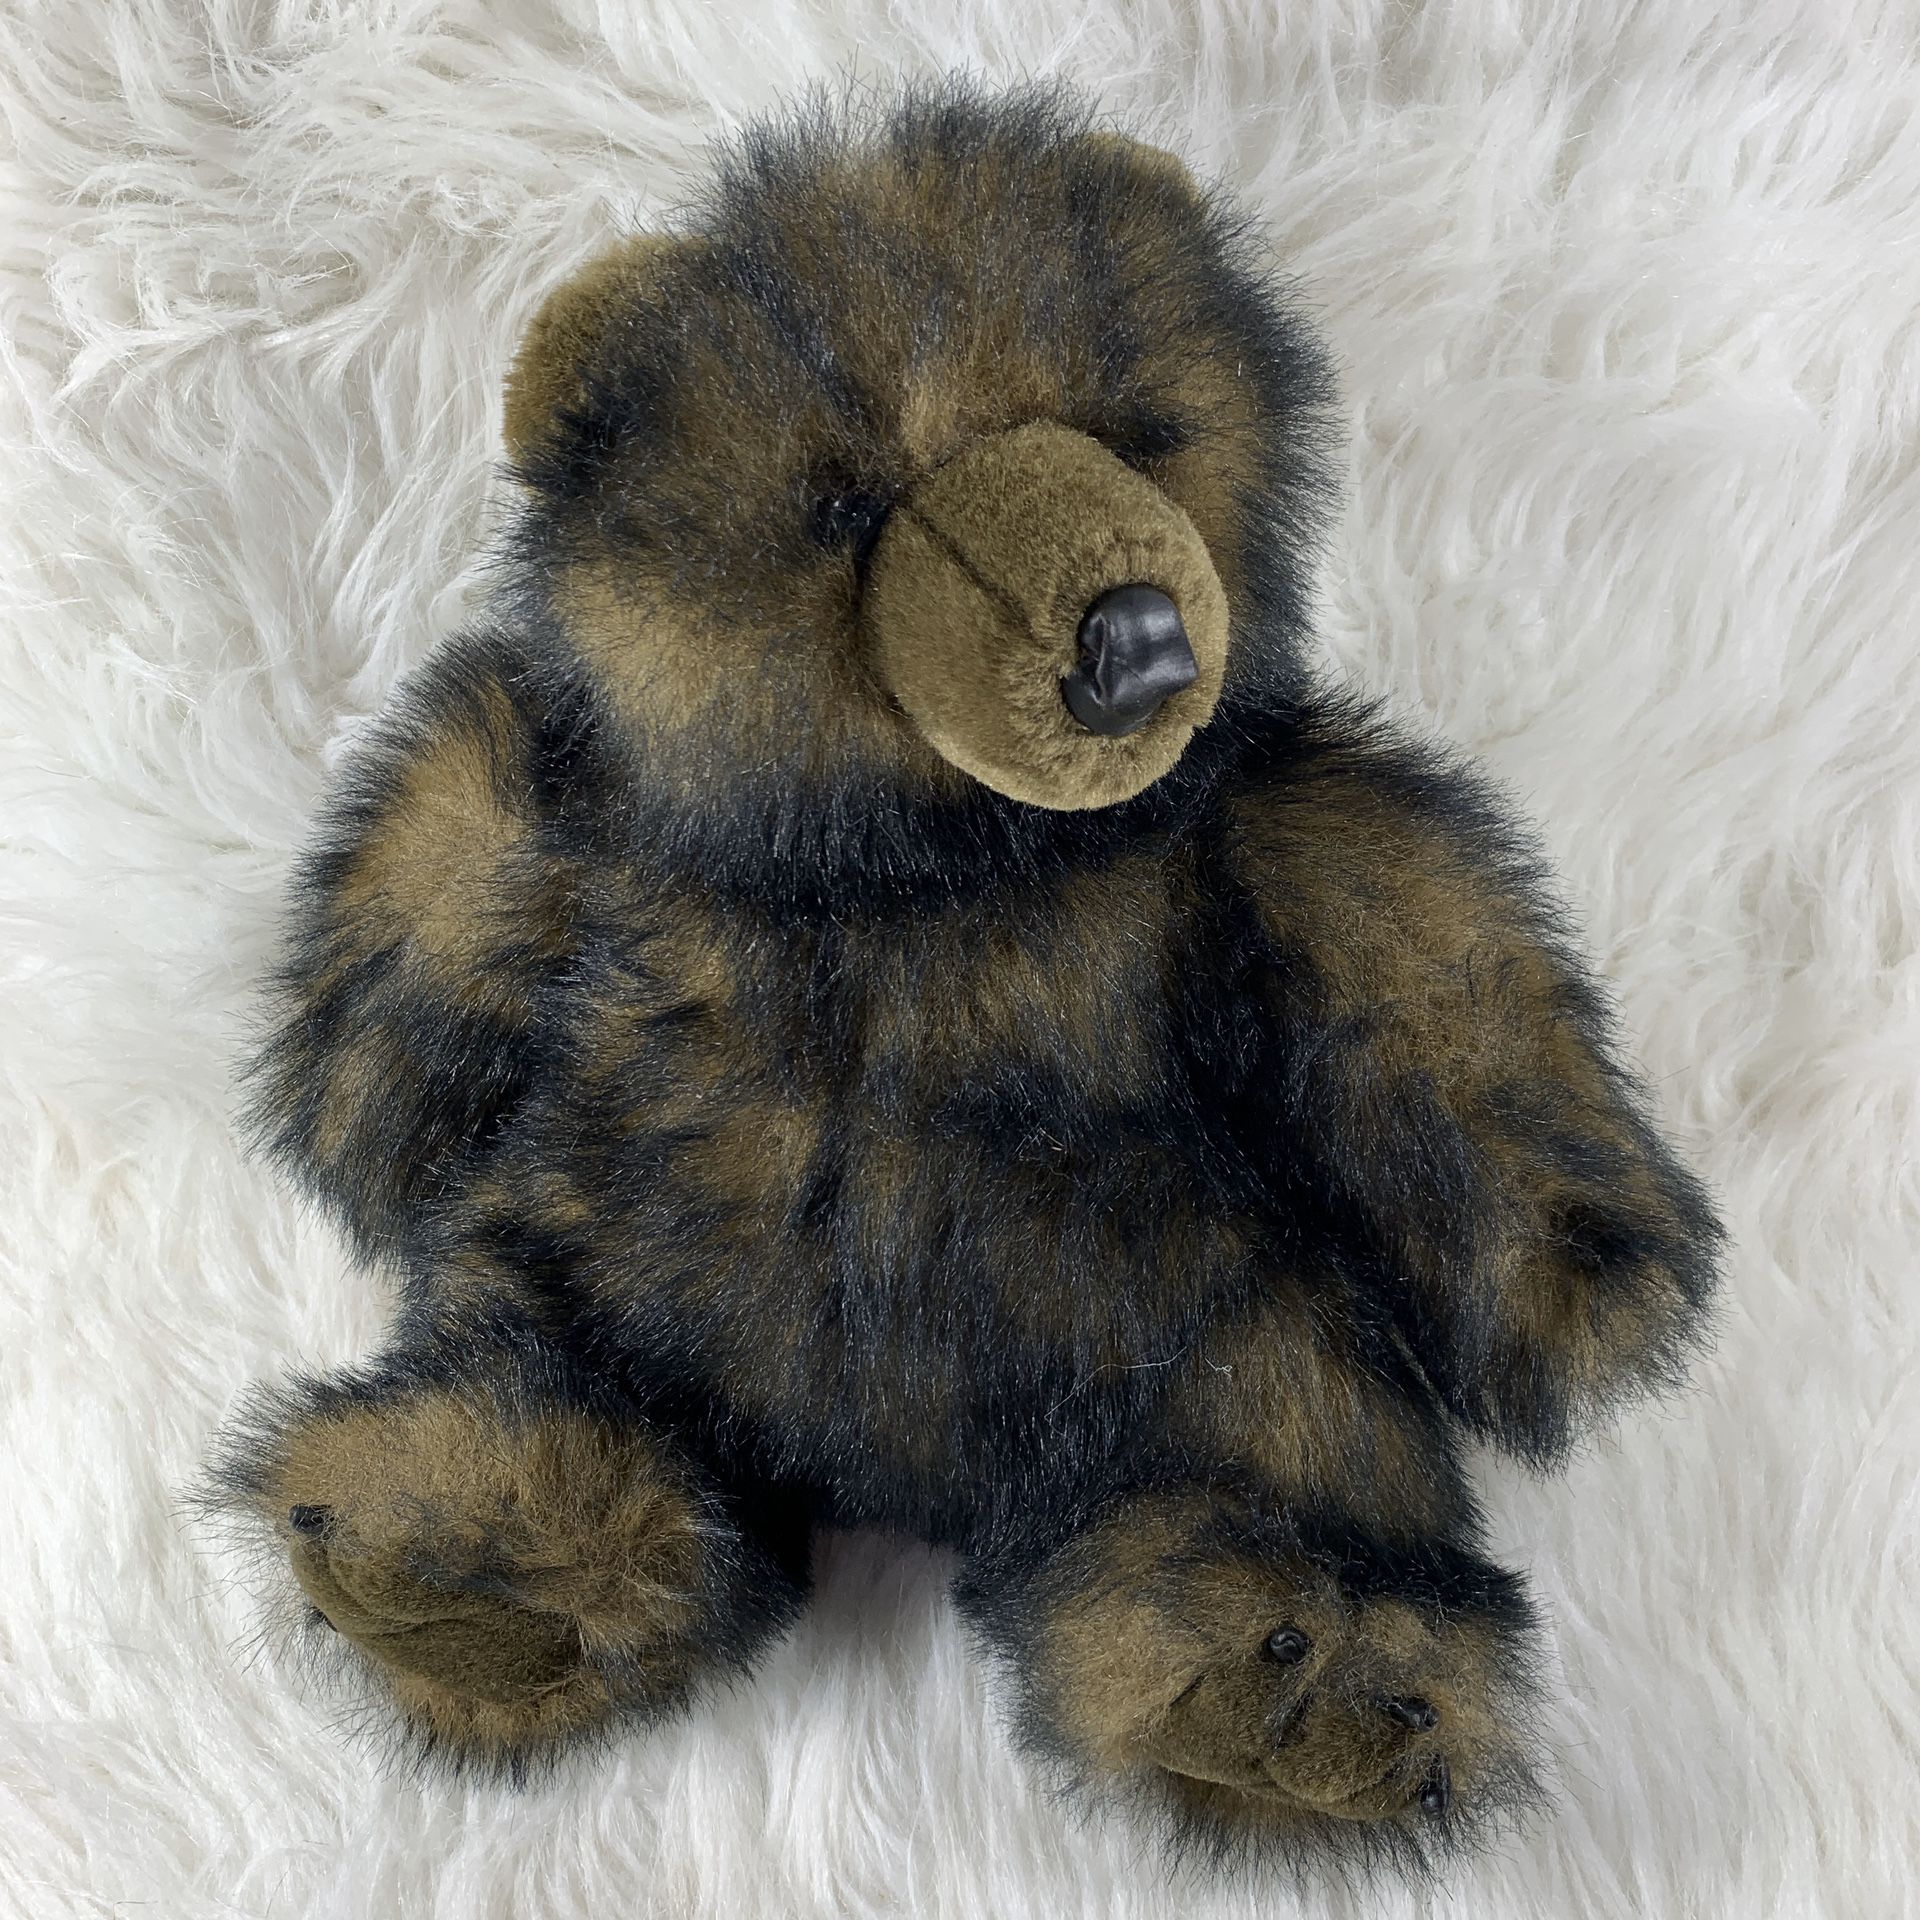 Vintage Black Brown Sitting Plush Bear Stuffed Animal 12”” Toy